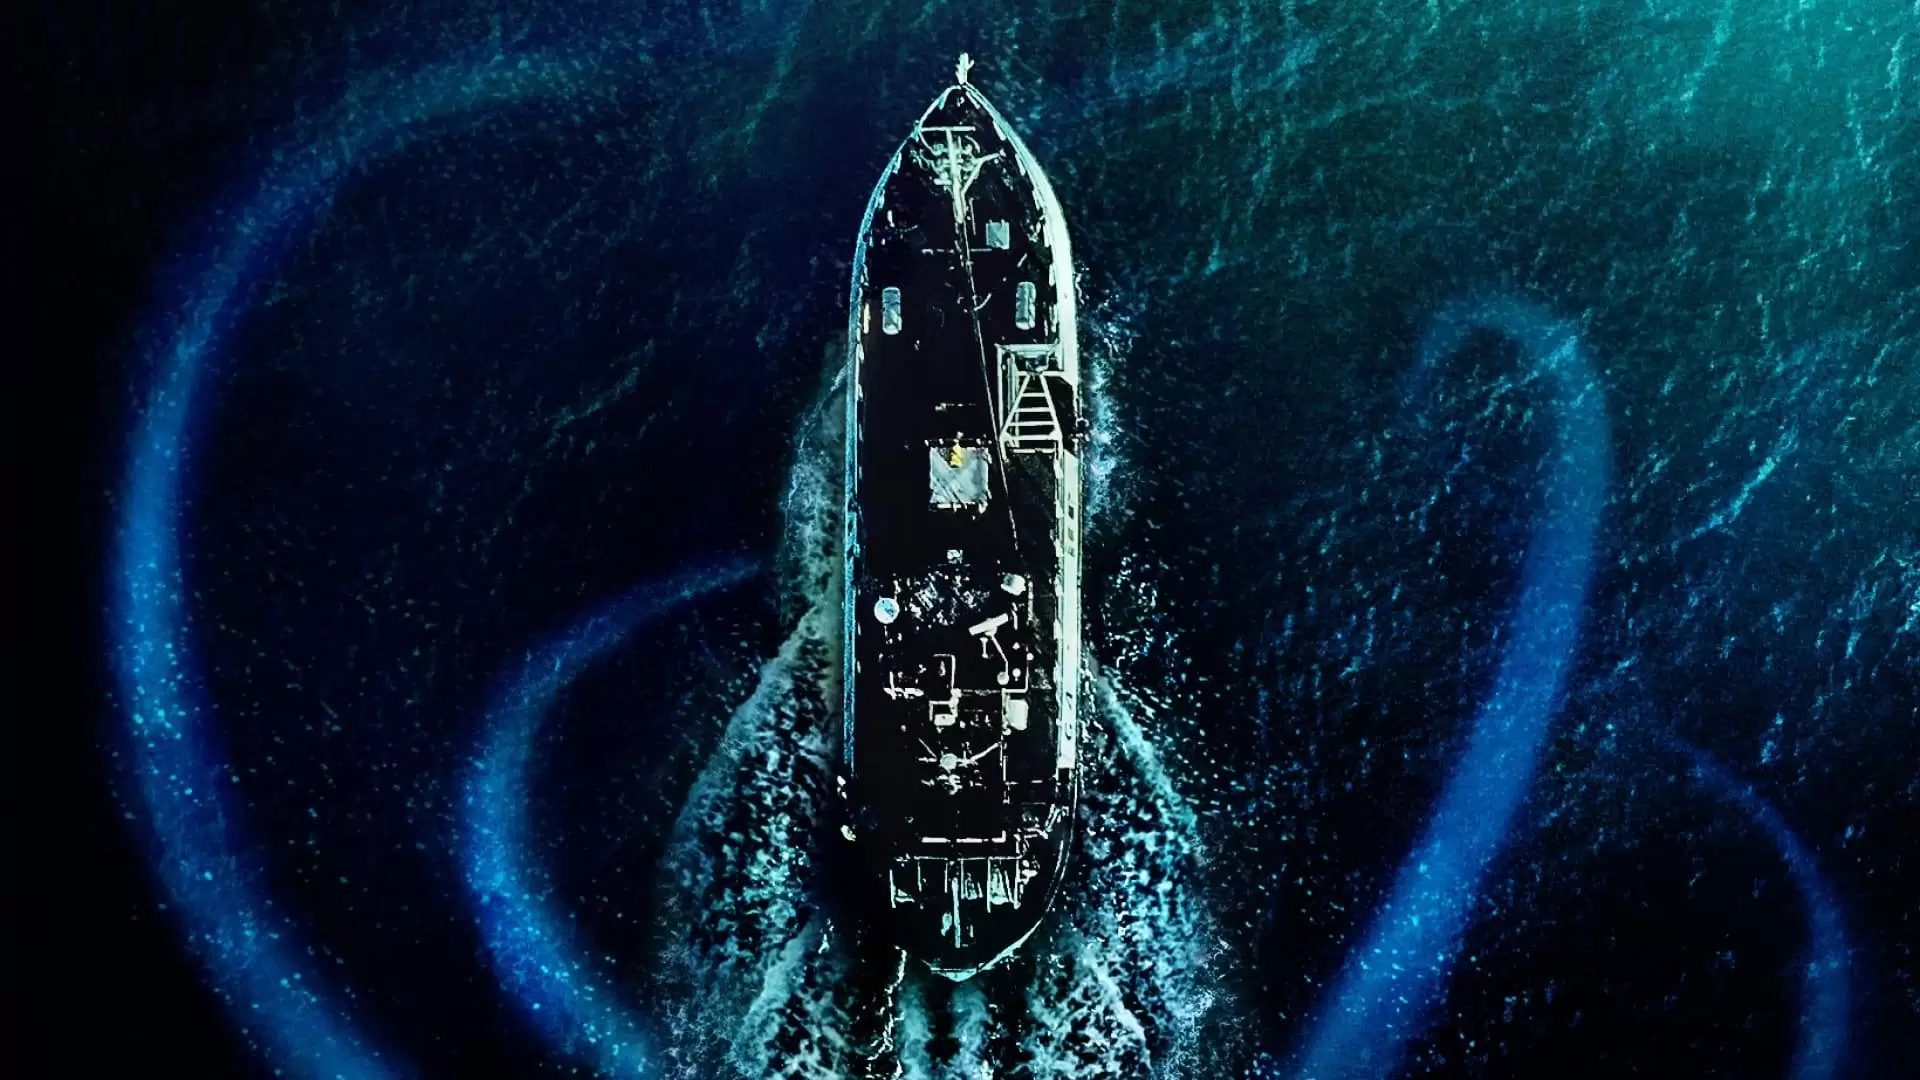 دانلود فیلم Sea Fever 2019 با زیرنویس فارسی و تماشای آنلاین